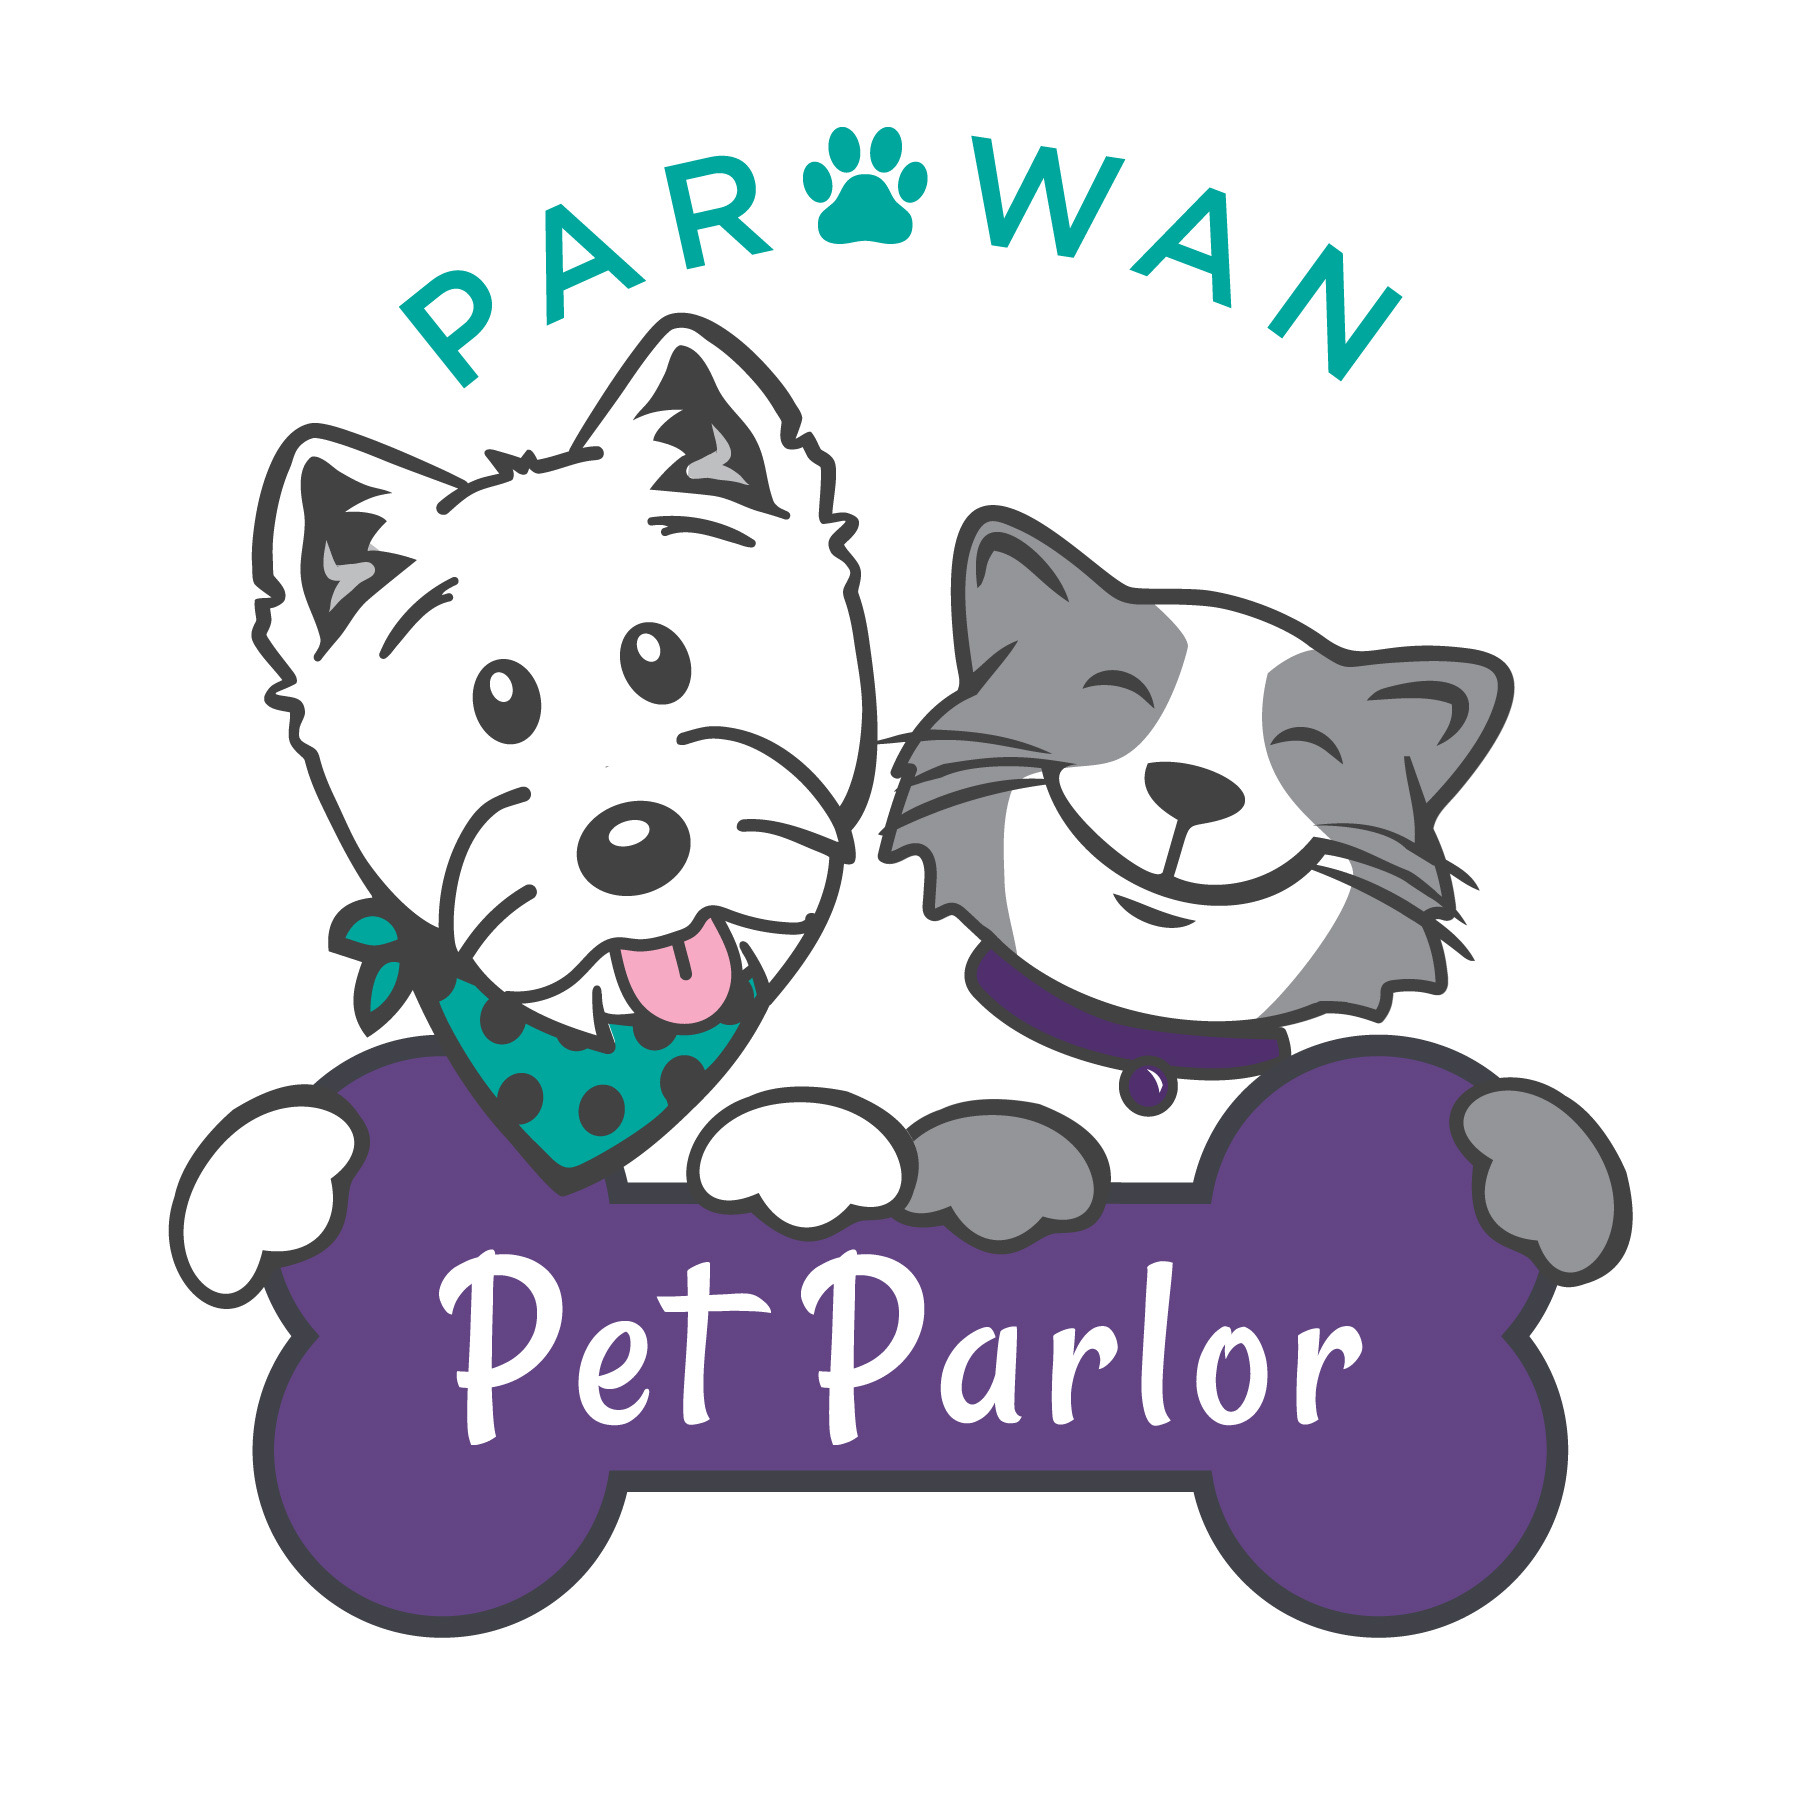 Parowan Pet Parlor 177 S 500 W, Parowan Utah 84761